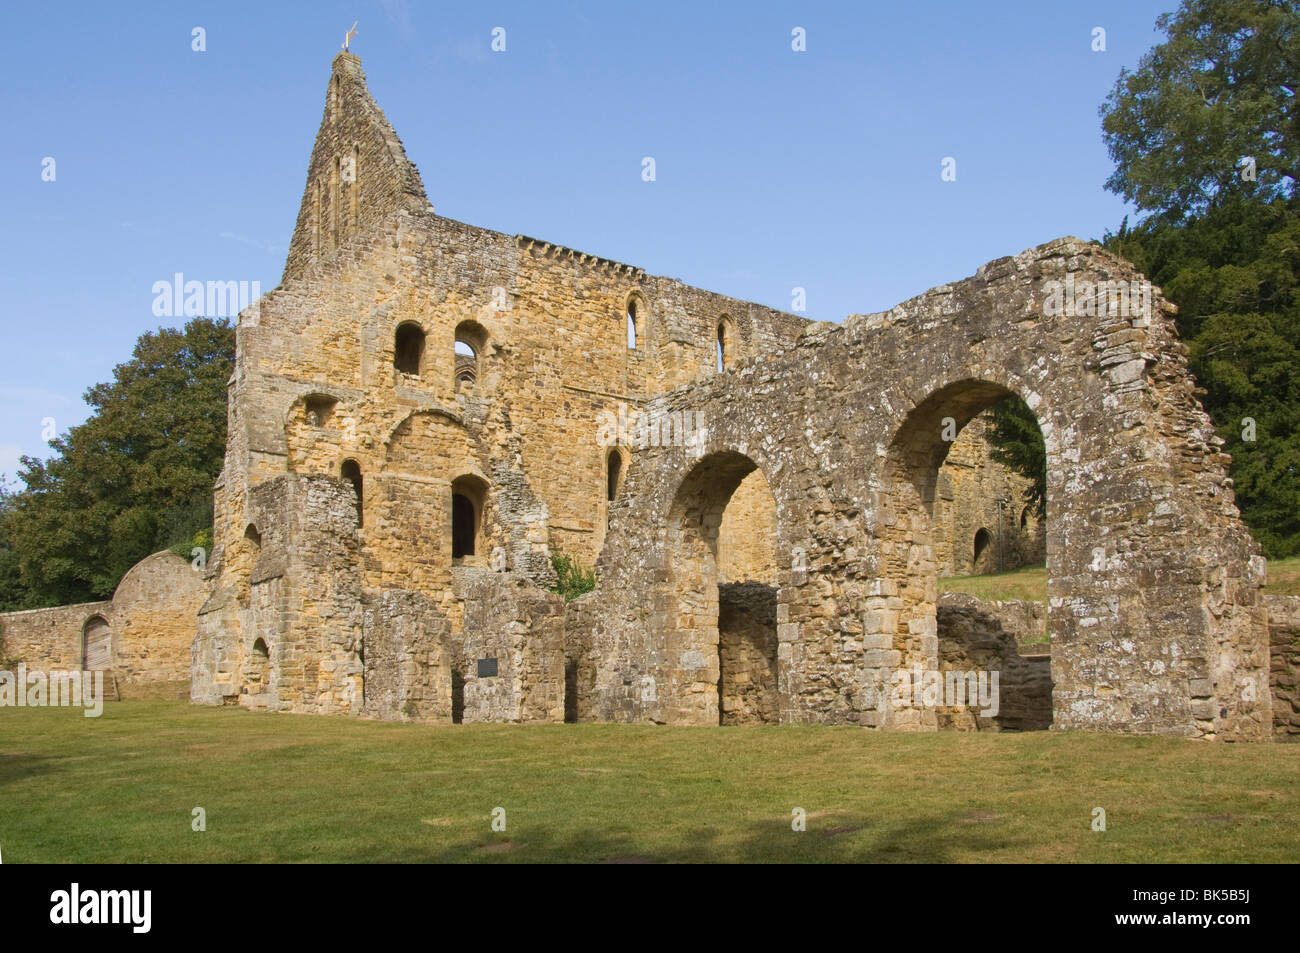 Battle Abbey, construit par Guillaume le Conquérant après la bataille de Hastings 1066, Battle, East Sussex, Angleterre, Royaume-Uni Banque D'Images